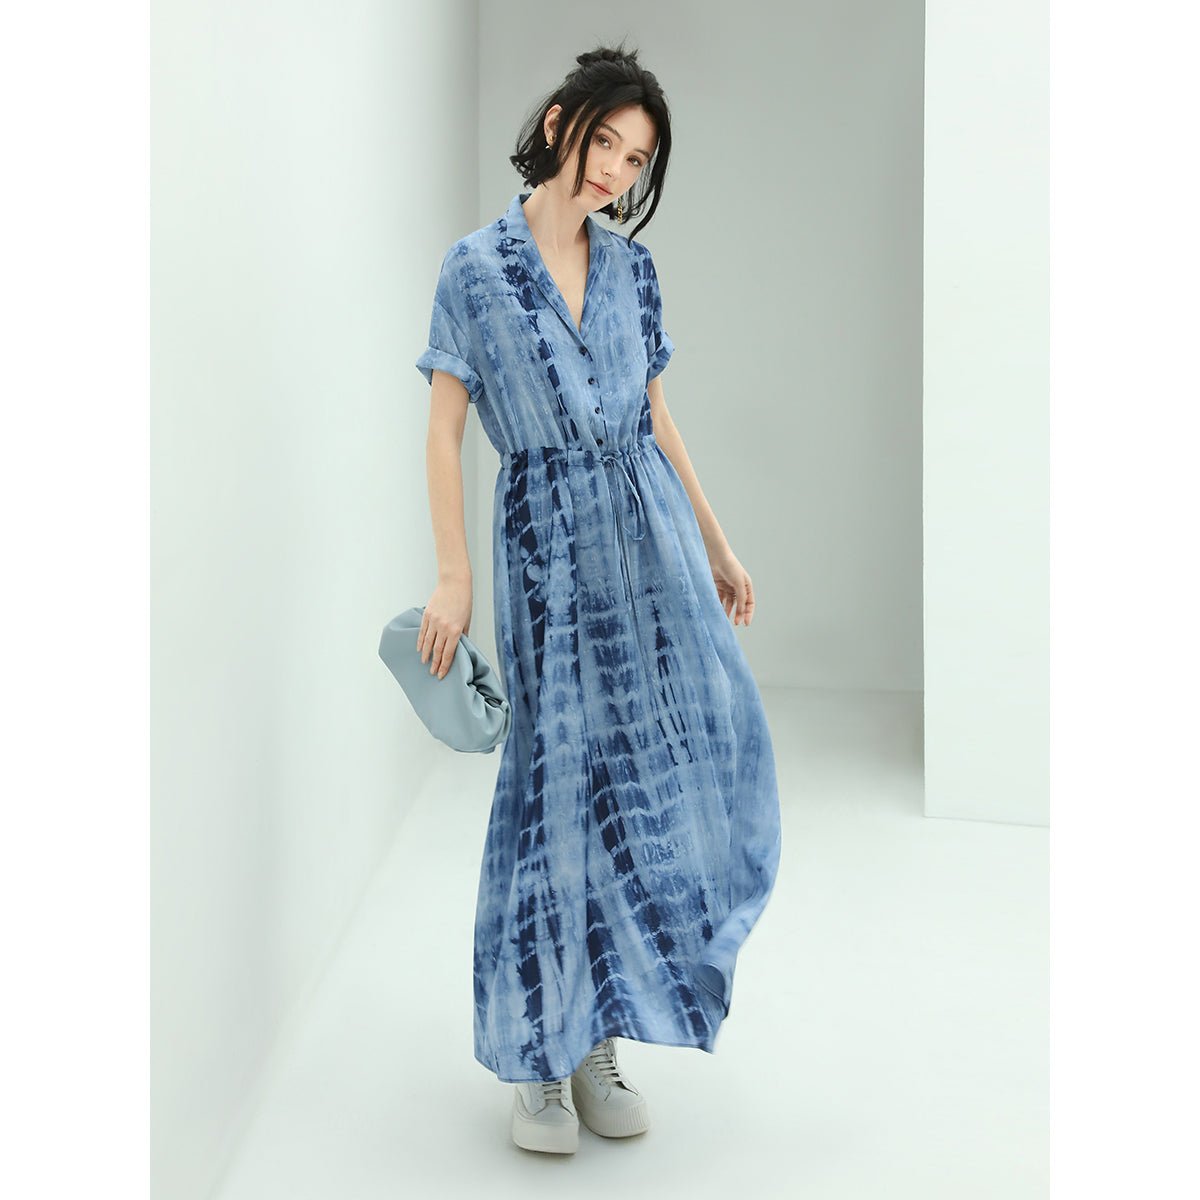 Summer Wave Hand-tiedy High-waist Blue Shirt Dress - 0cm